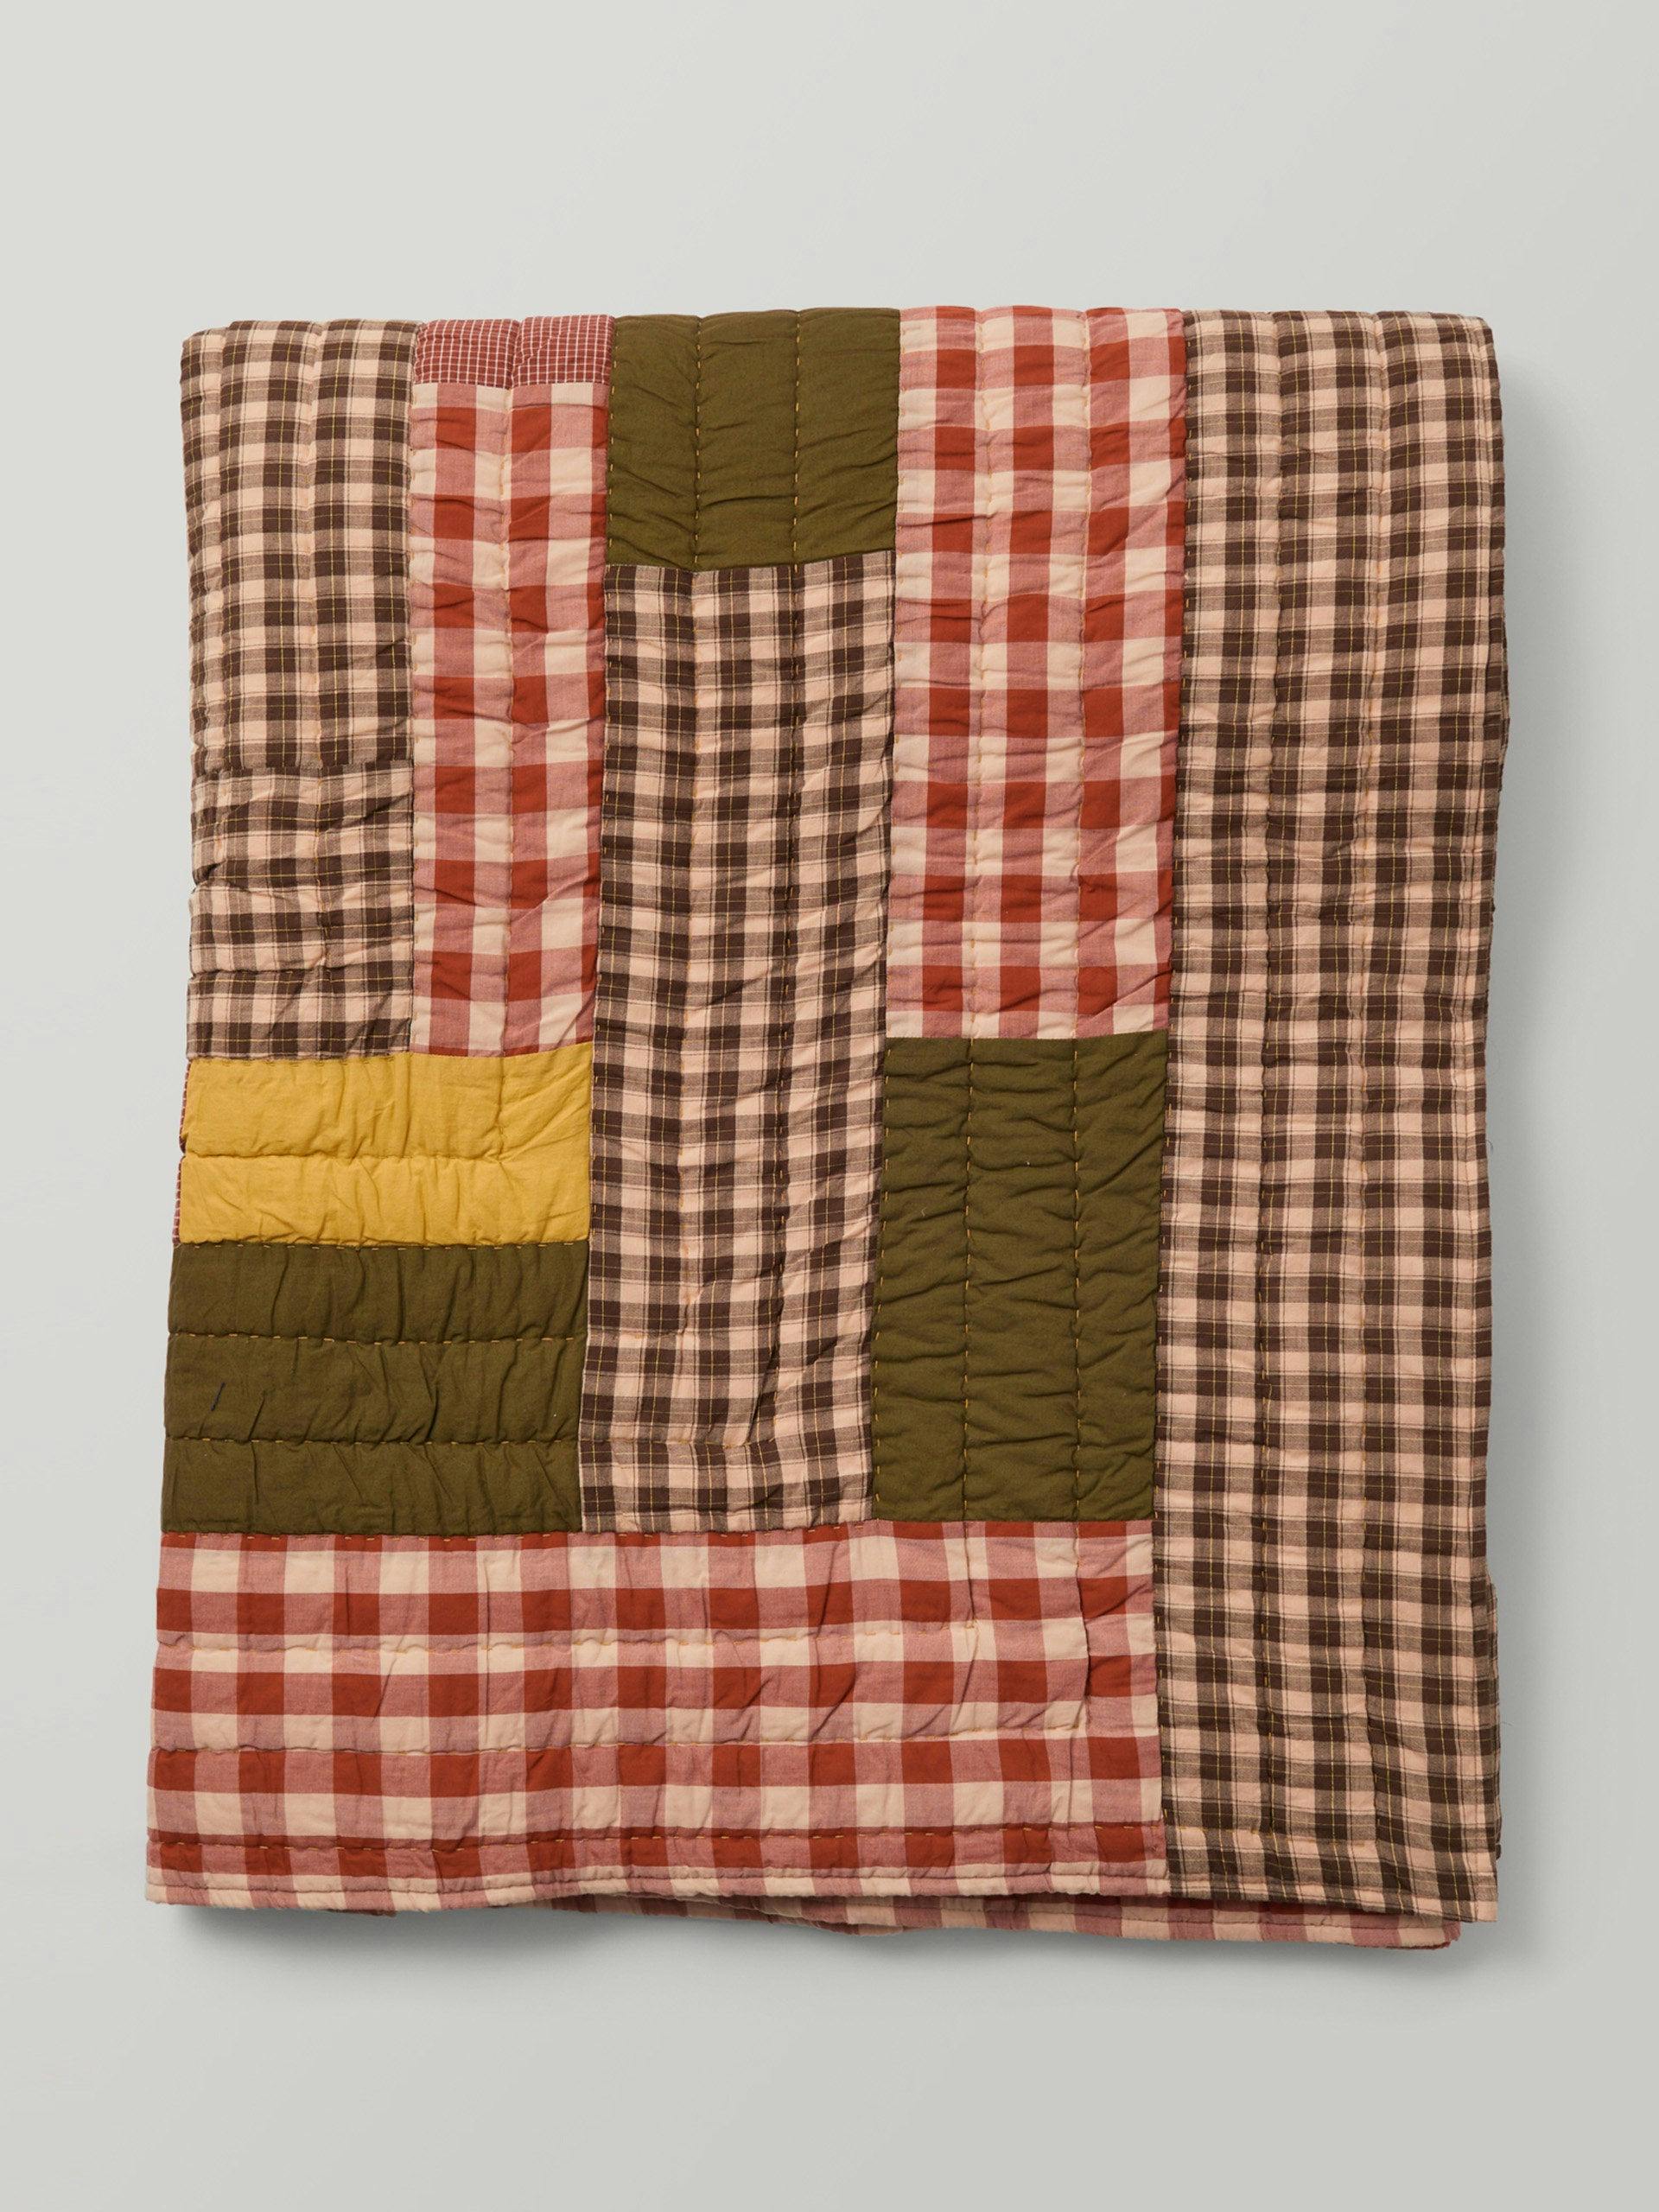 Lowen cotton patchwork quilt